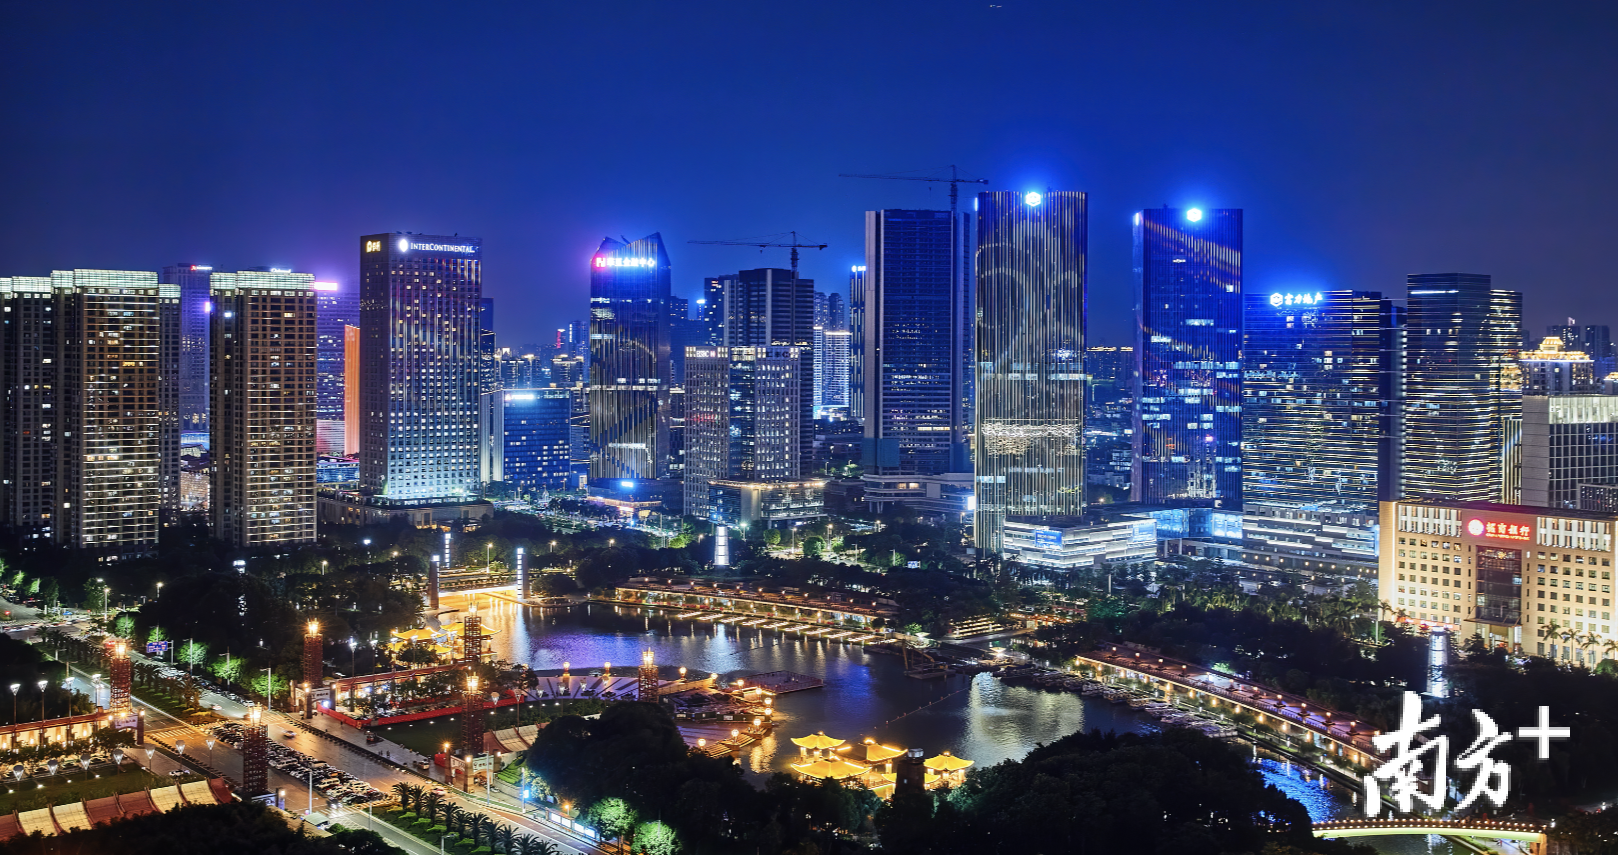 9月28日晚，广东金融高新区景观提升照明工程首期将正式亮灯。图为调试现场。谢肖兰 摄